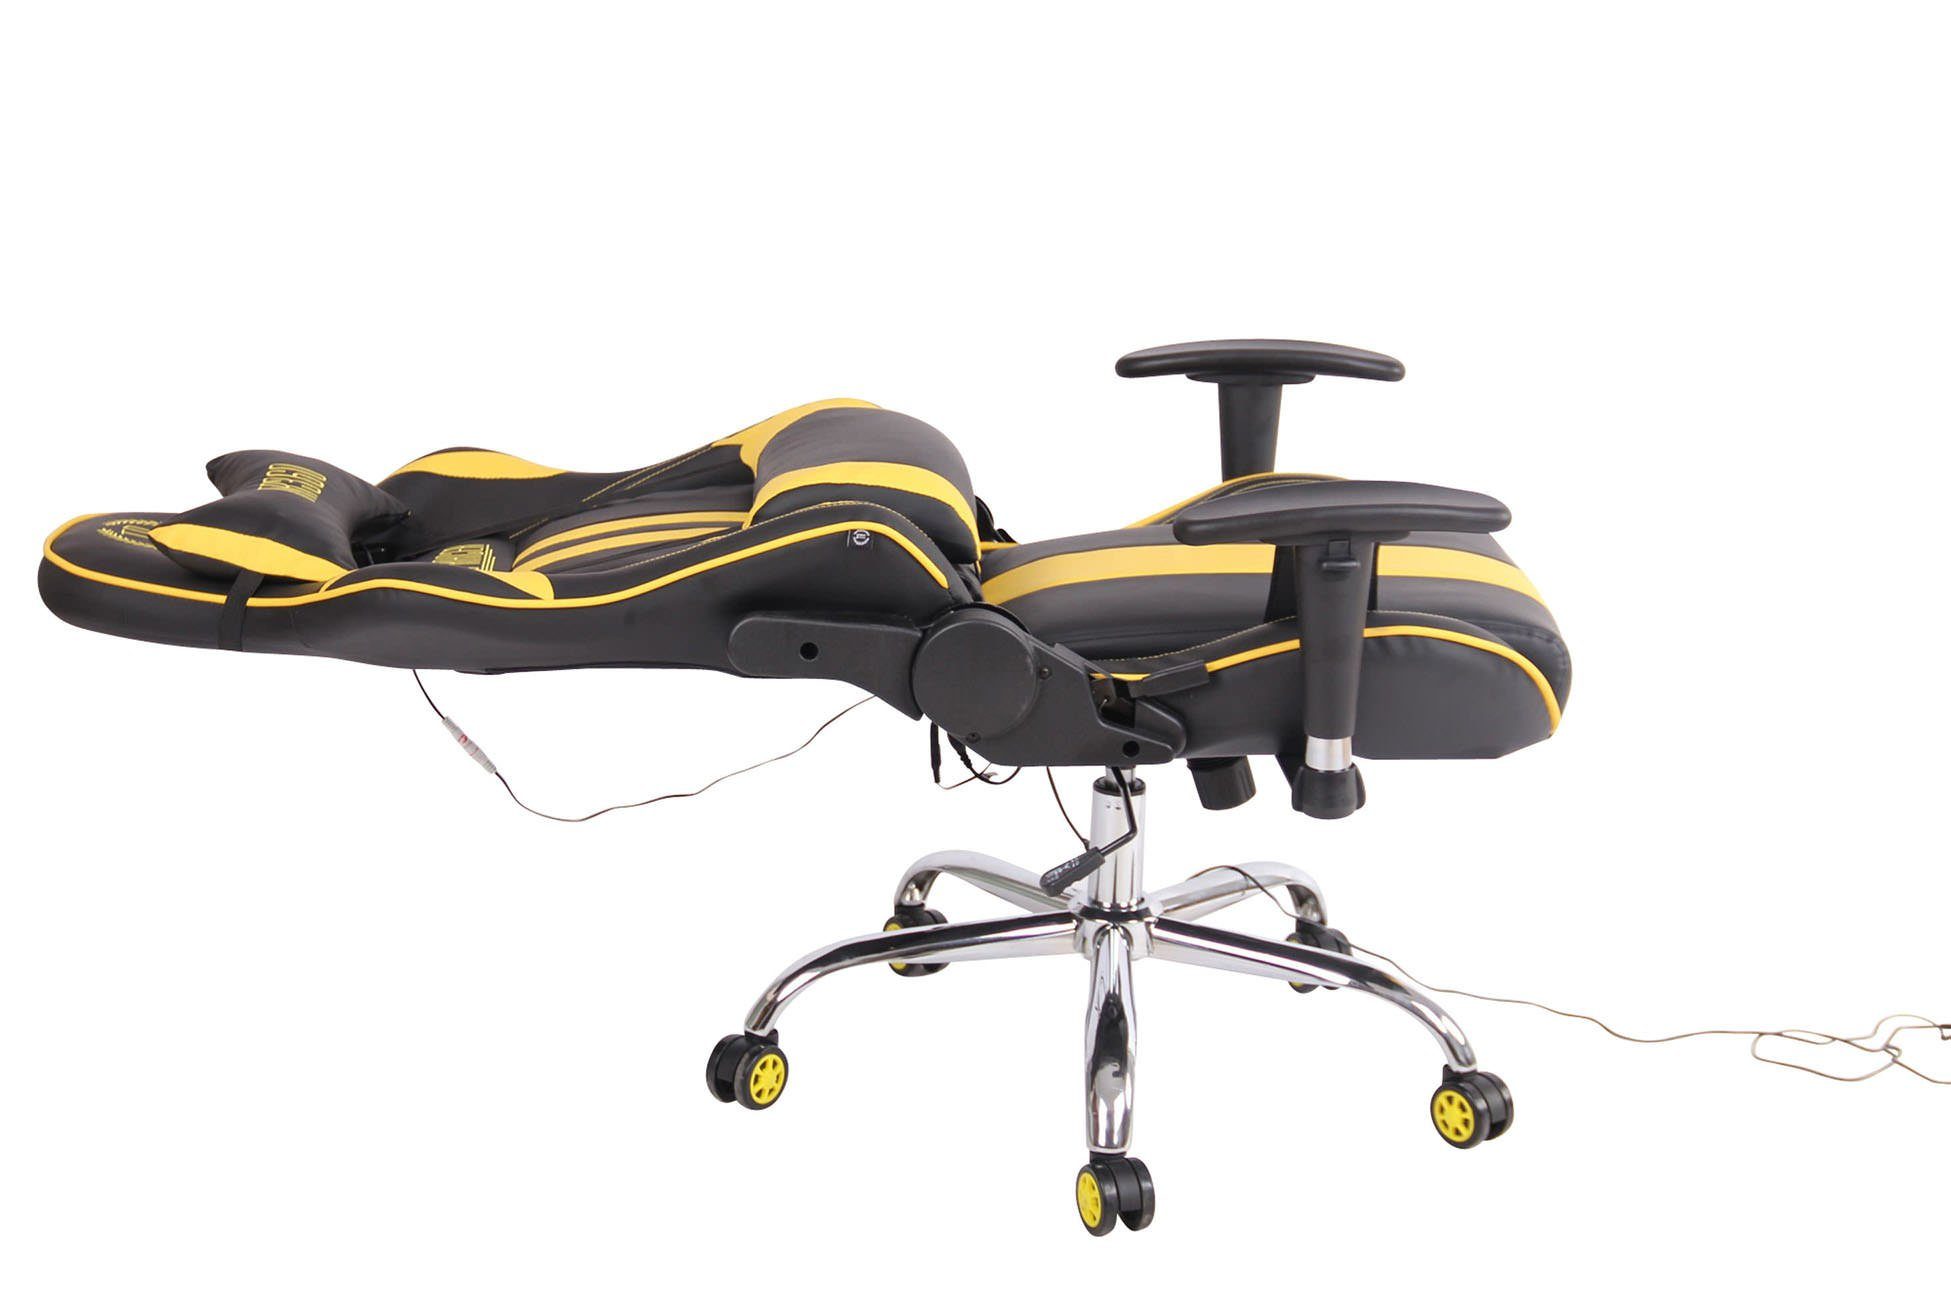 mit Chair Massagefunktion CLP XM schwarz/gelb Limit Kunstleder, Gaming